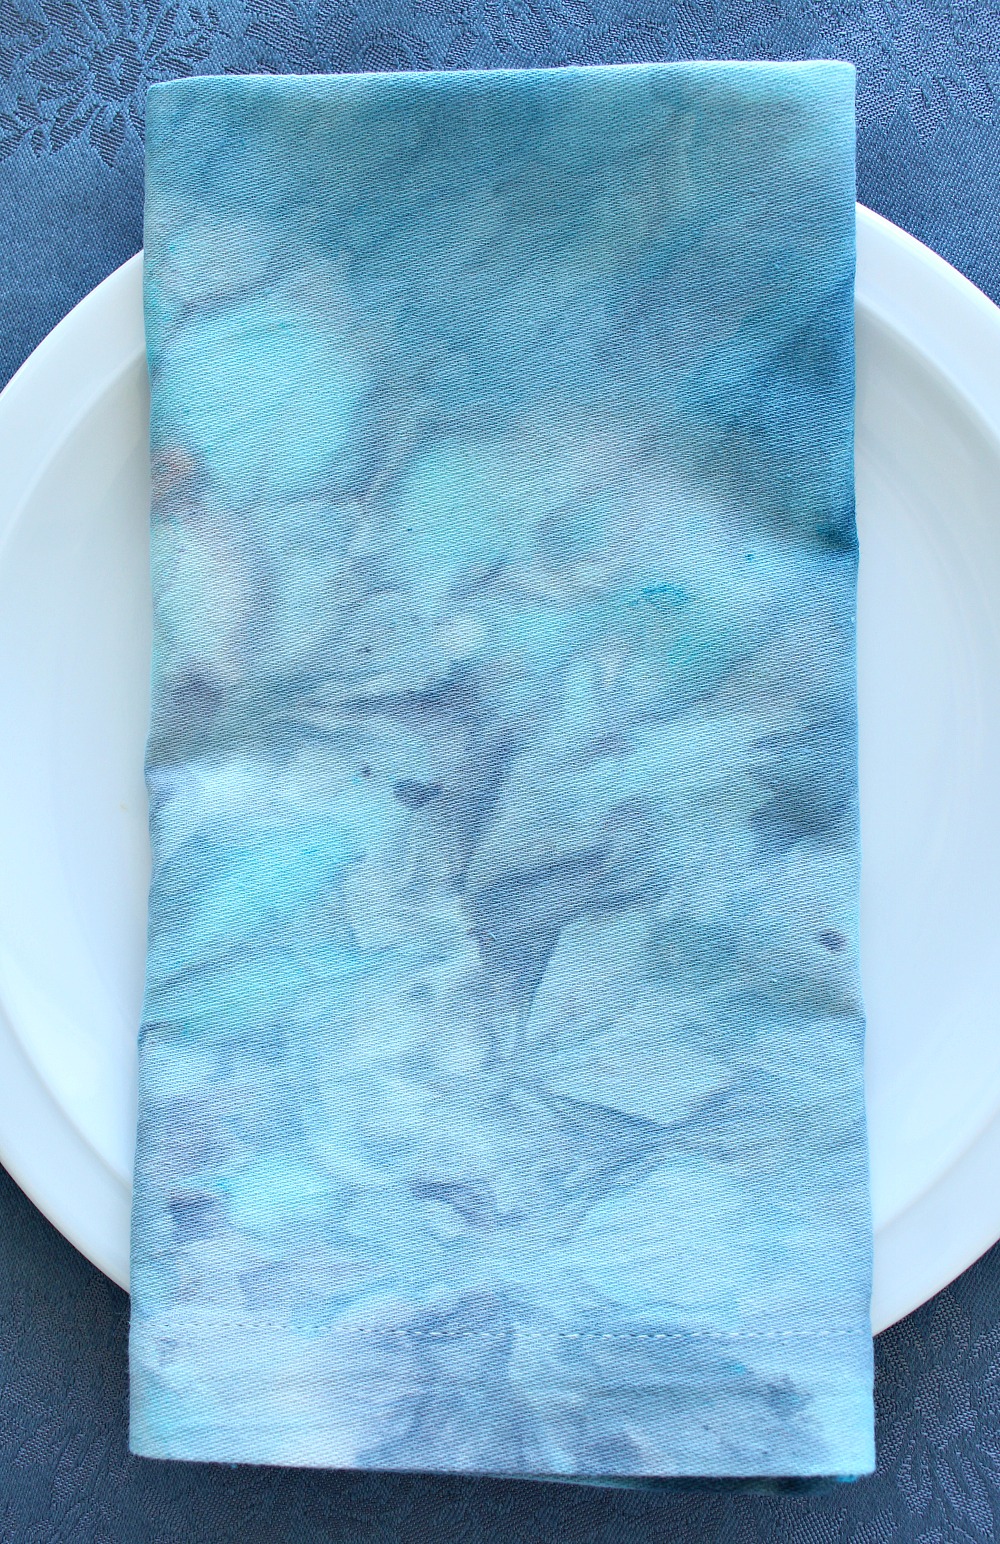 Turquoise and Grey Ice Dyed Fabric Napkin by @danslelakehouse